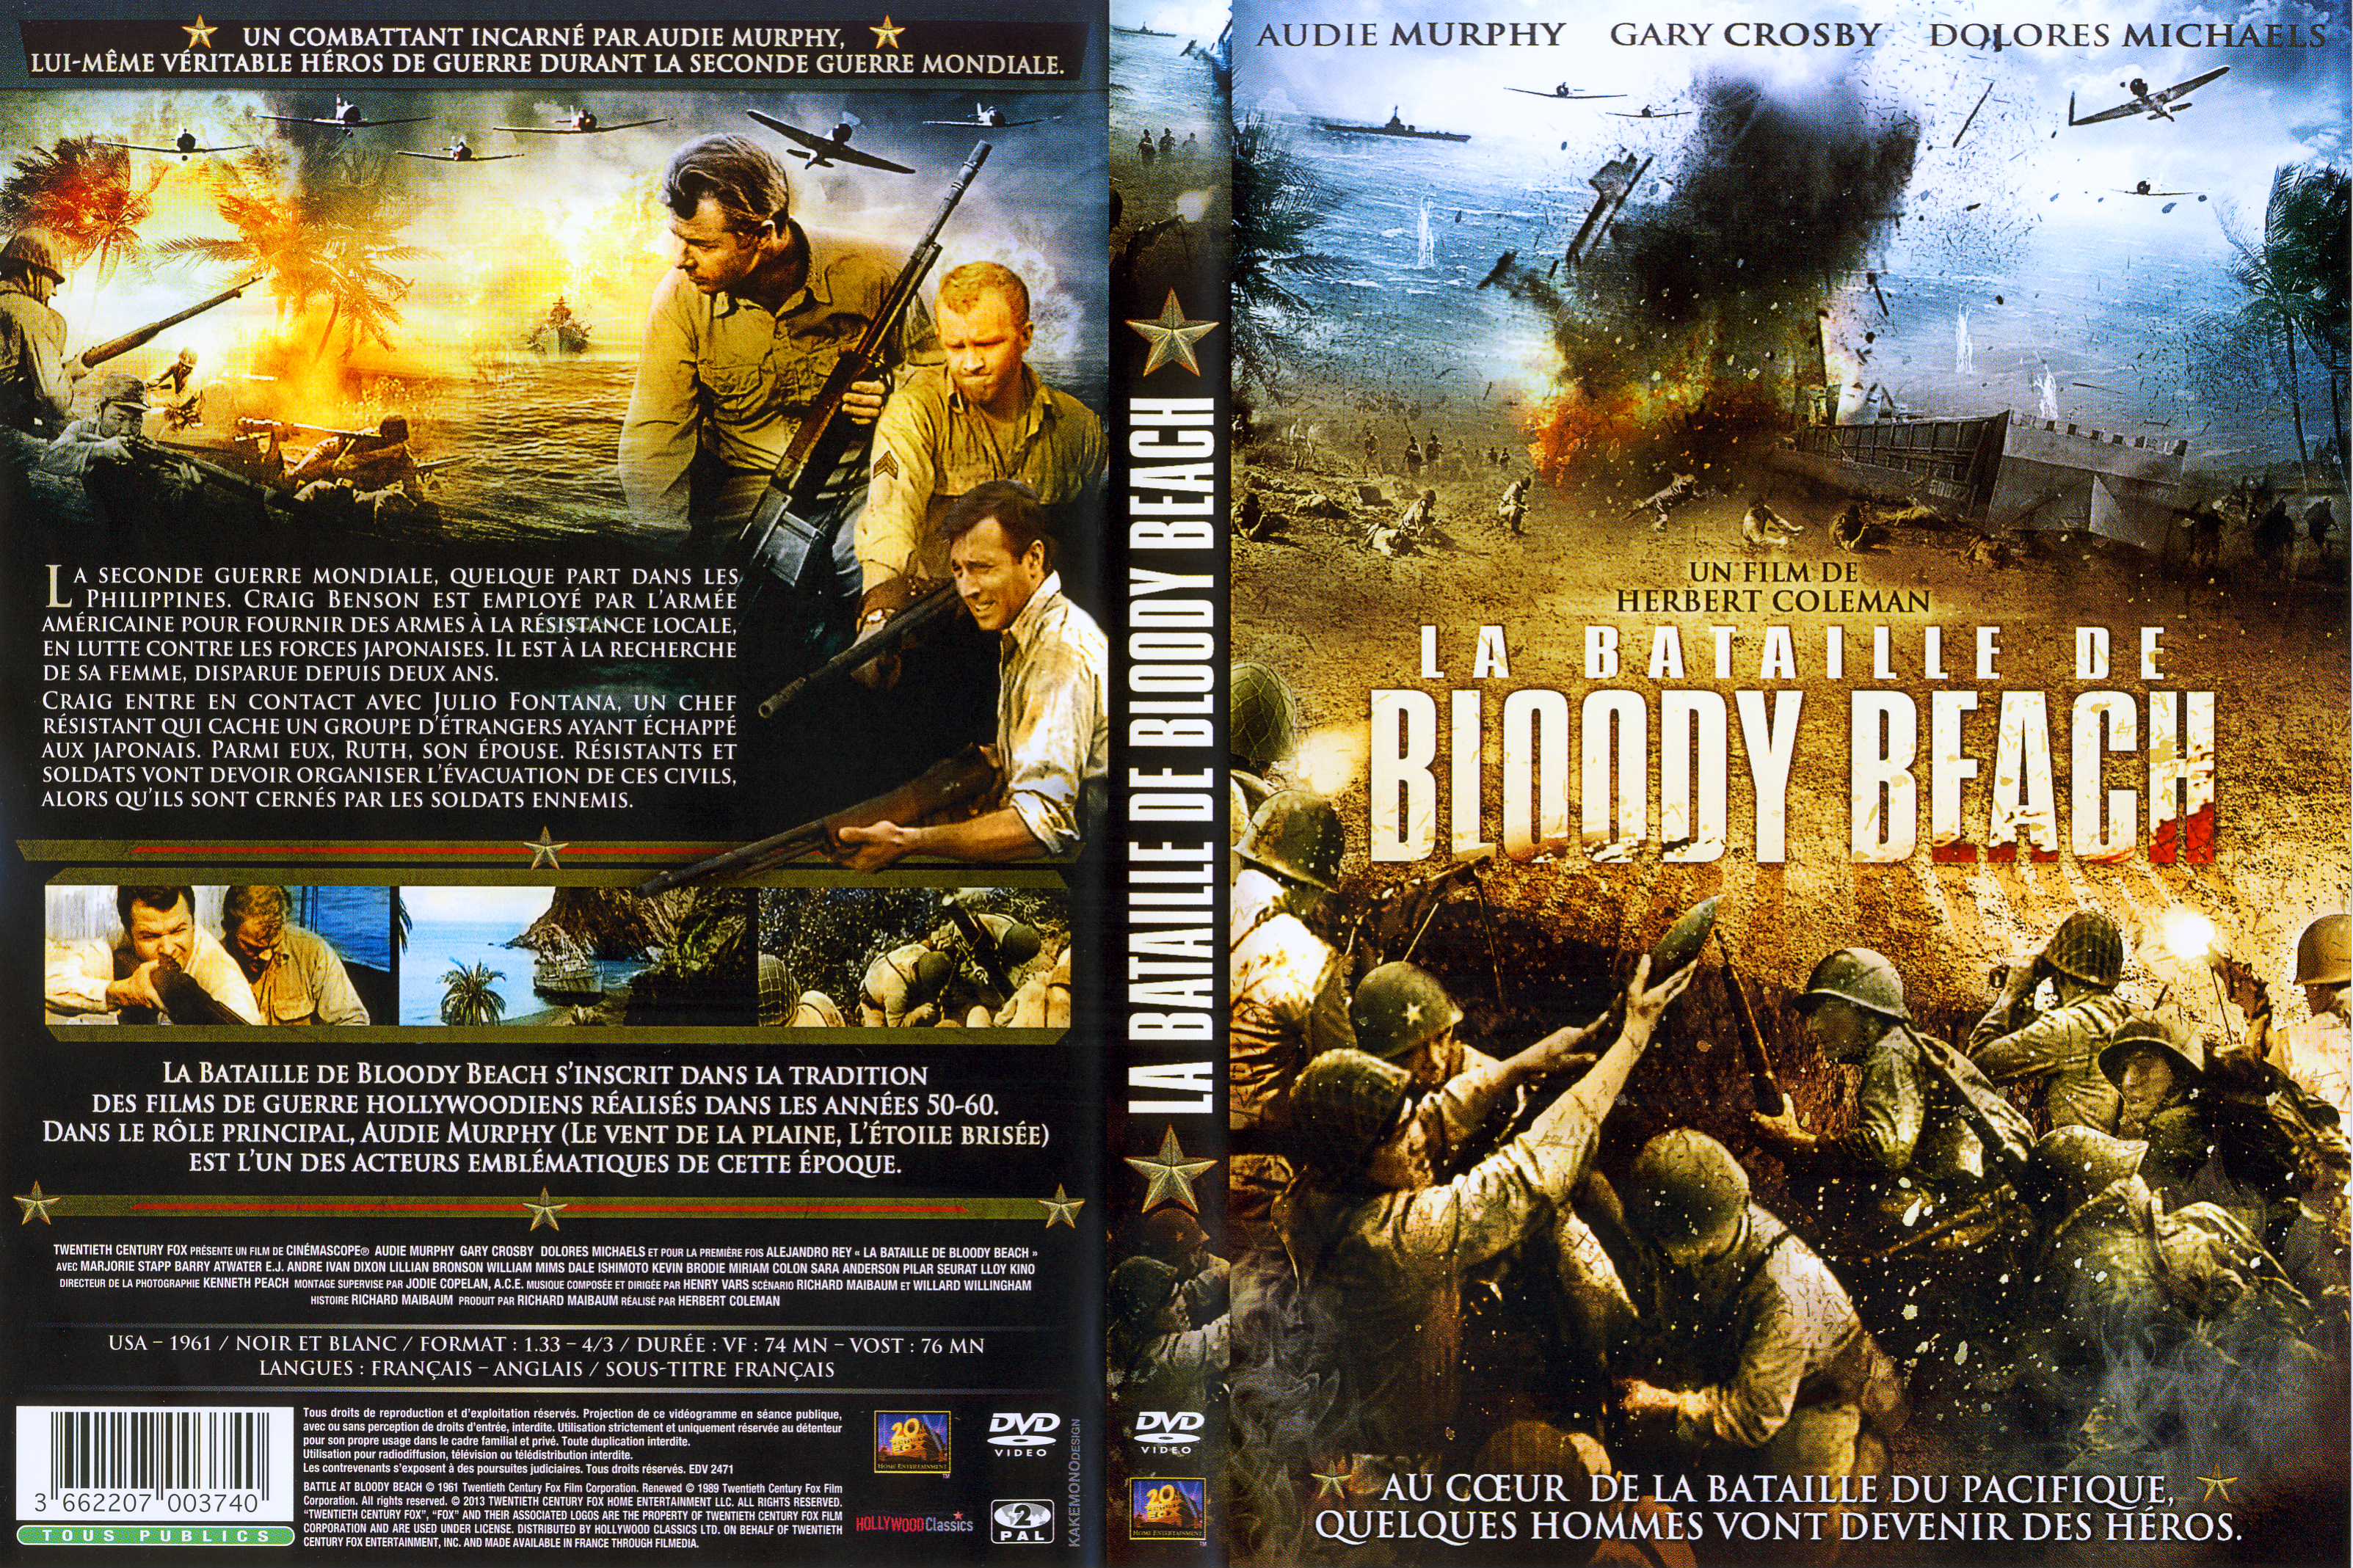 Jaquette DVD La bataille de Bloody Beach v2